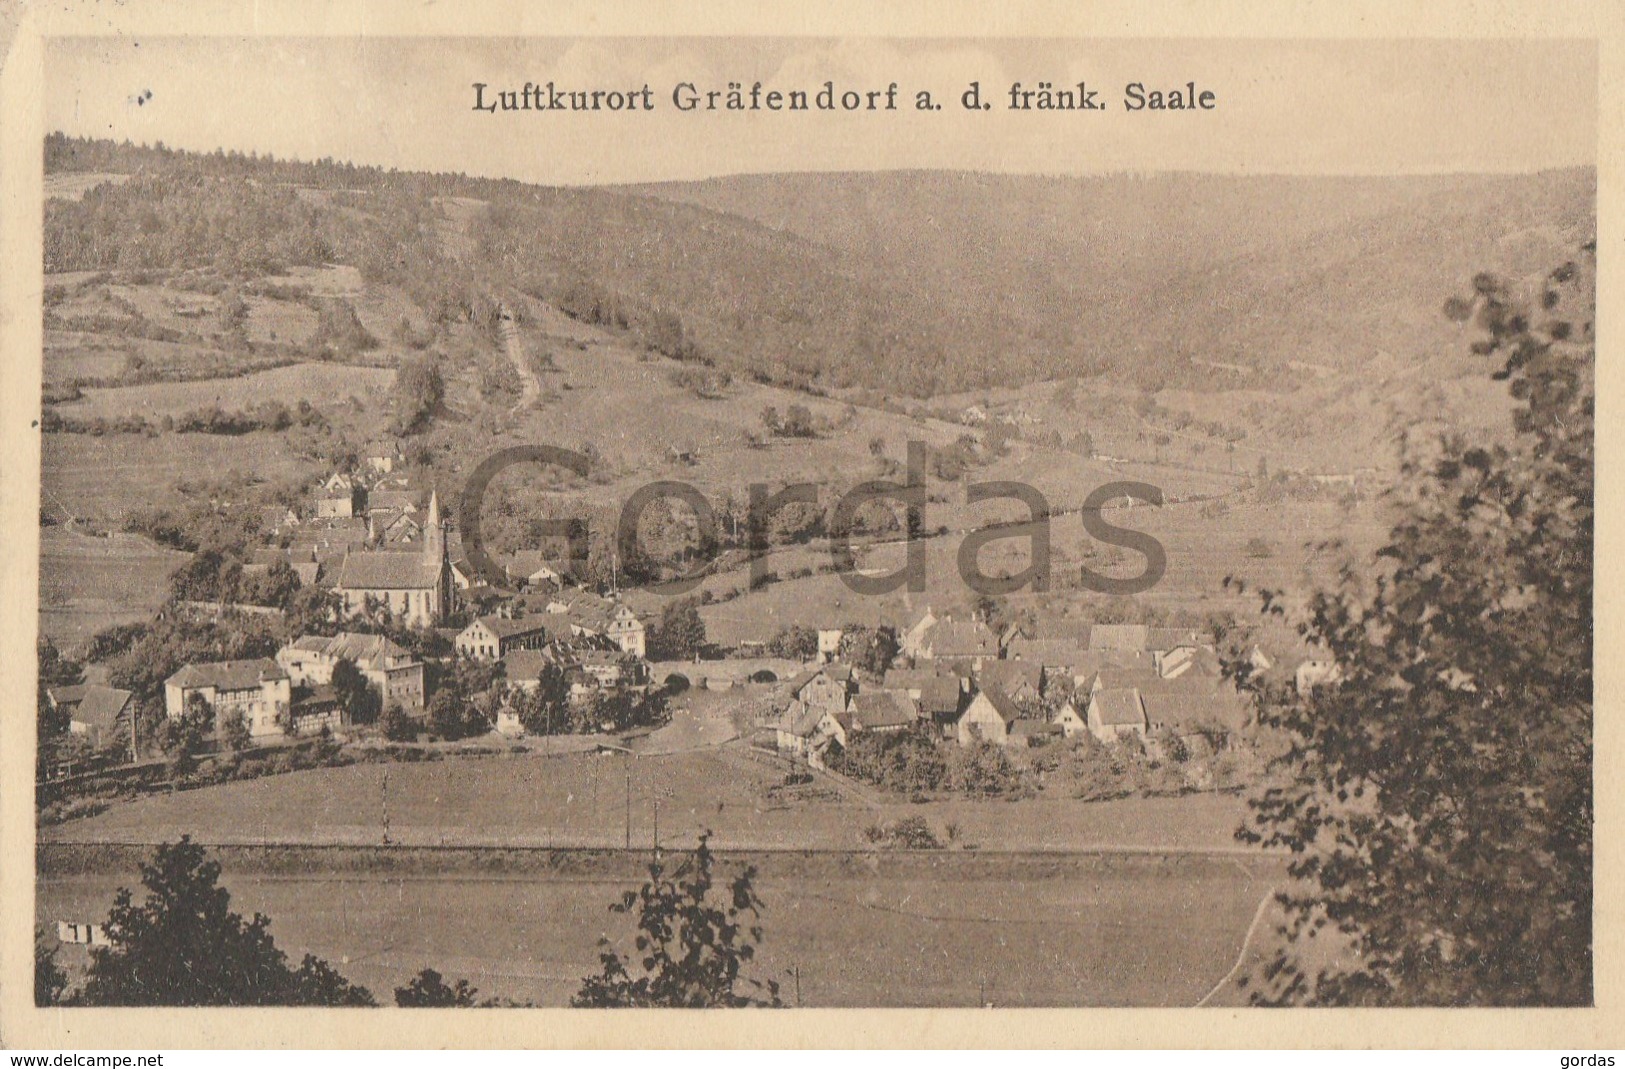 Germany - Luftkurort Grafendorf - Saale - Gemünden